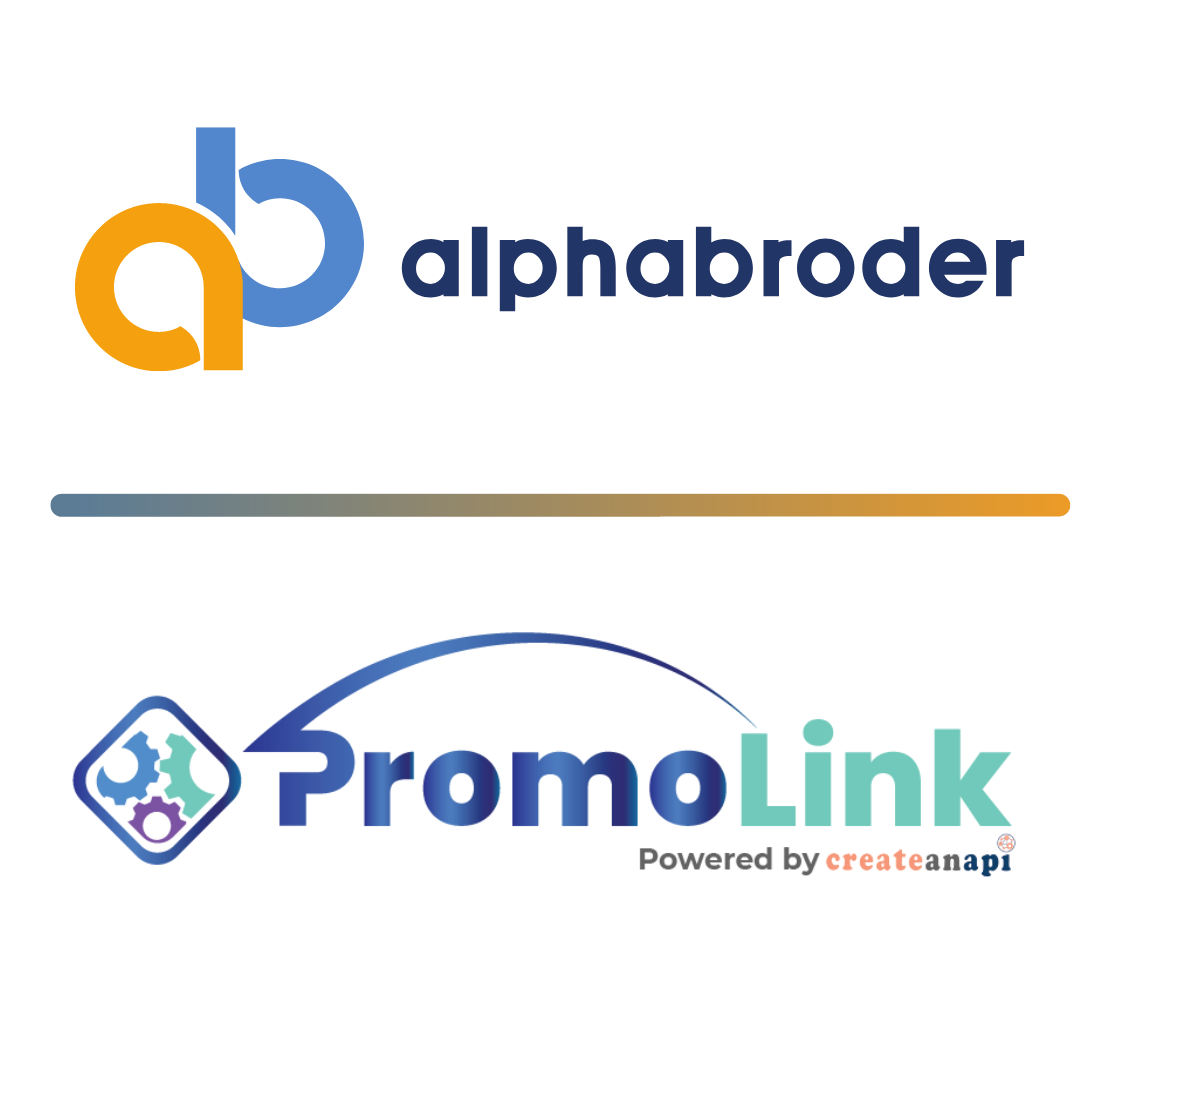 PromoLink is your digital link to alphabroder